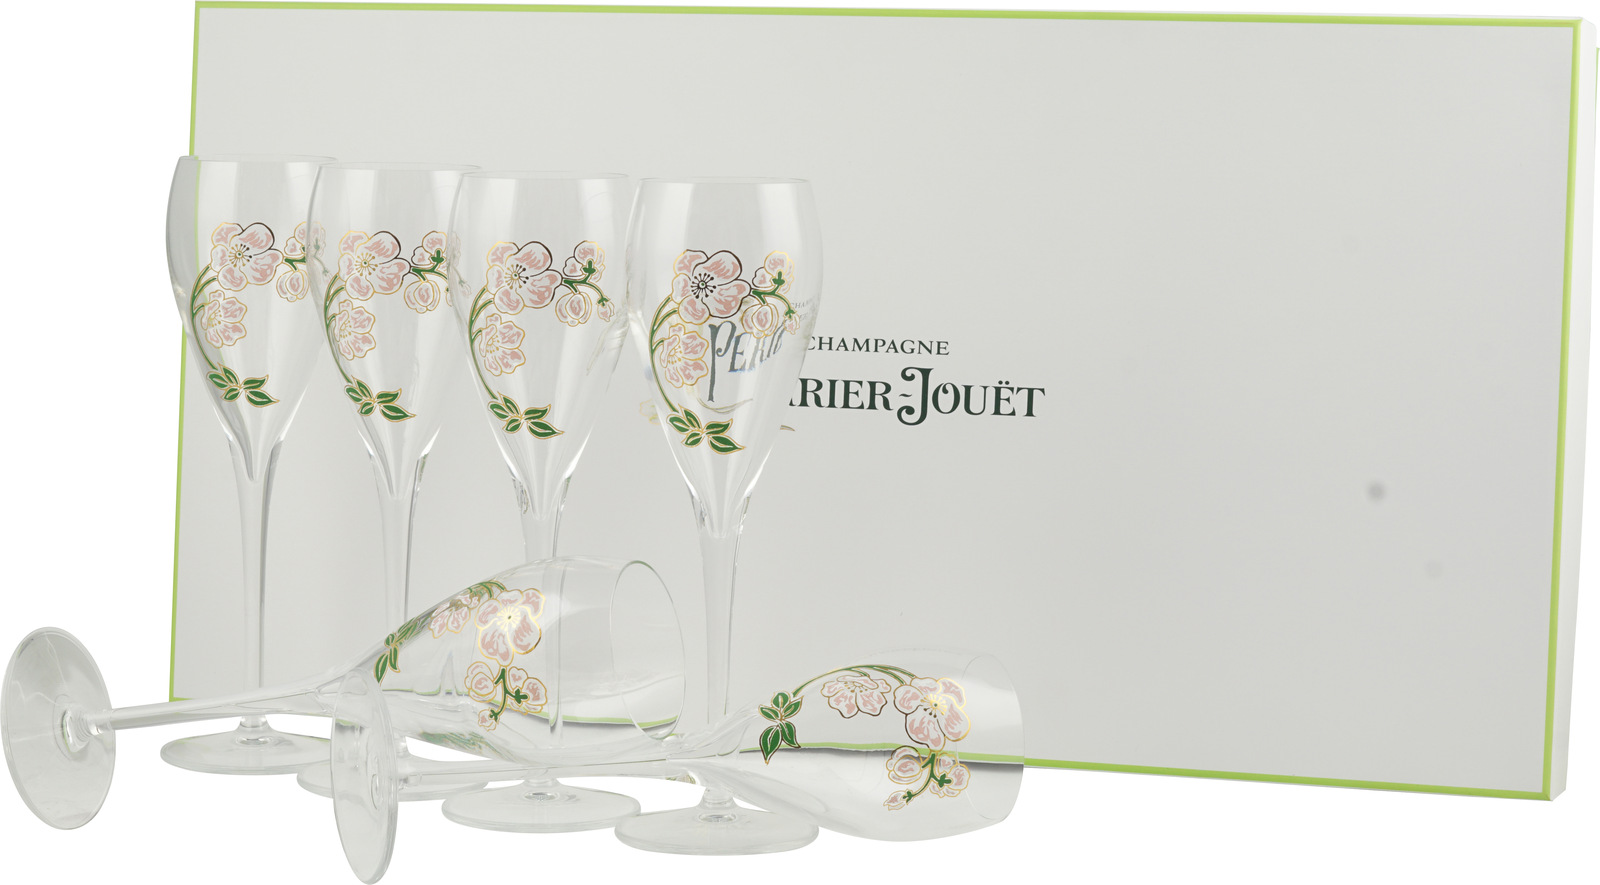 Sklenice na šampaňské Perrier-Jouët